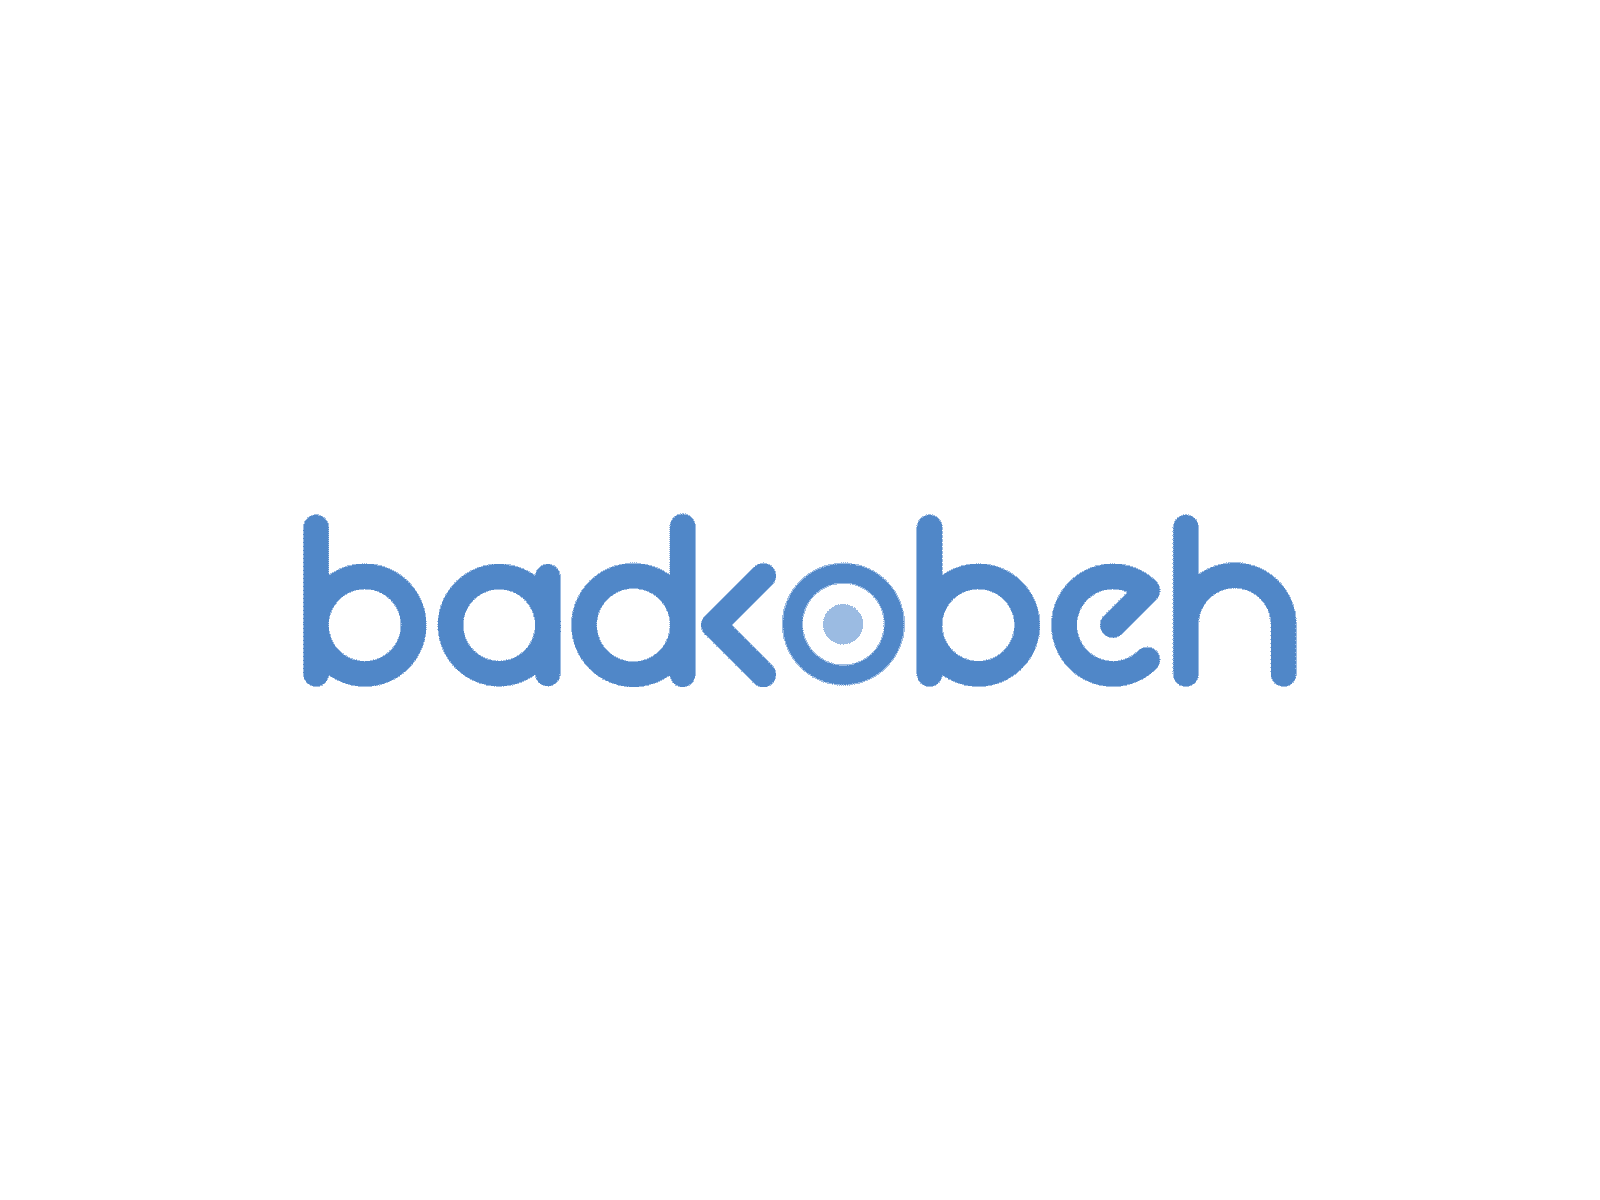 Badkooben animated logo animate animated logo animation branding flat gif identity logo logo animation minimal morph motion motion logo motiongraphics